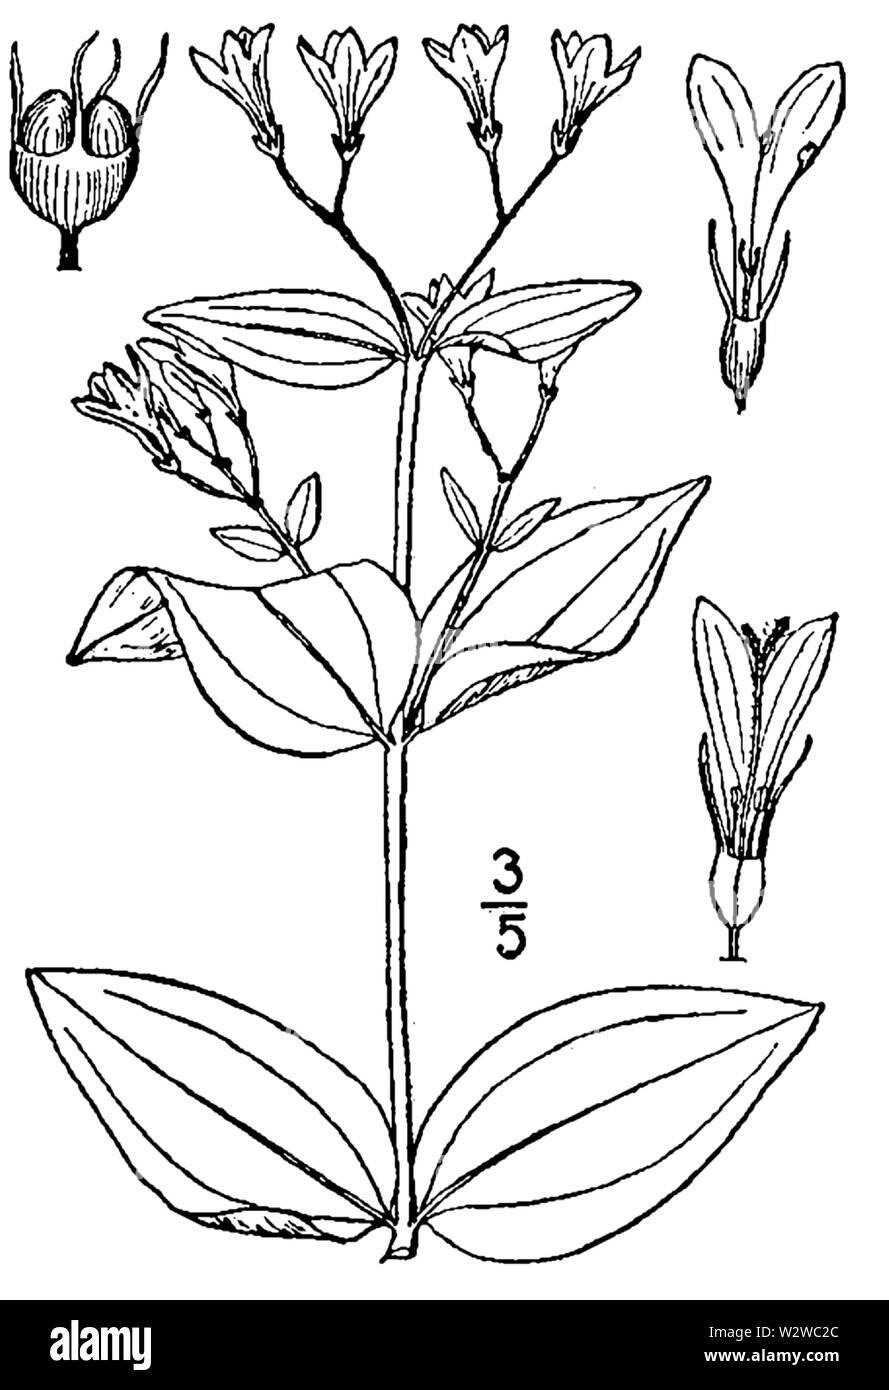 Botanische Illustration von Houstonia purpurea aus dem Jahre 1913. Stockfoto